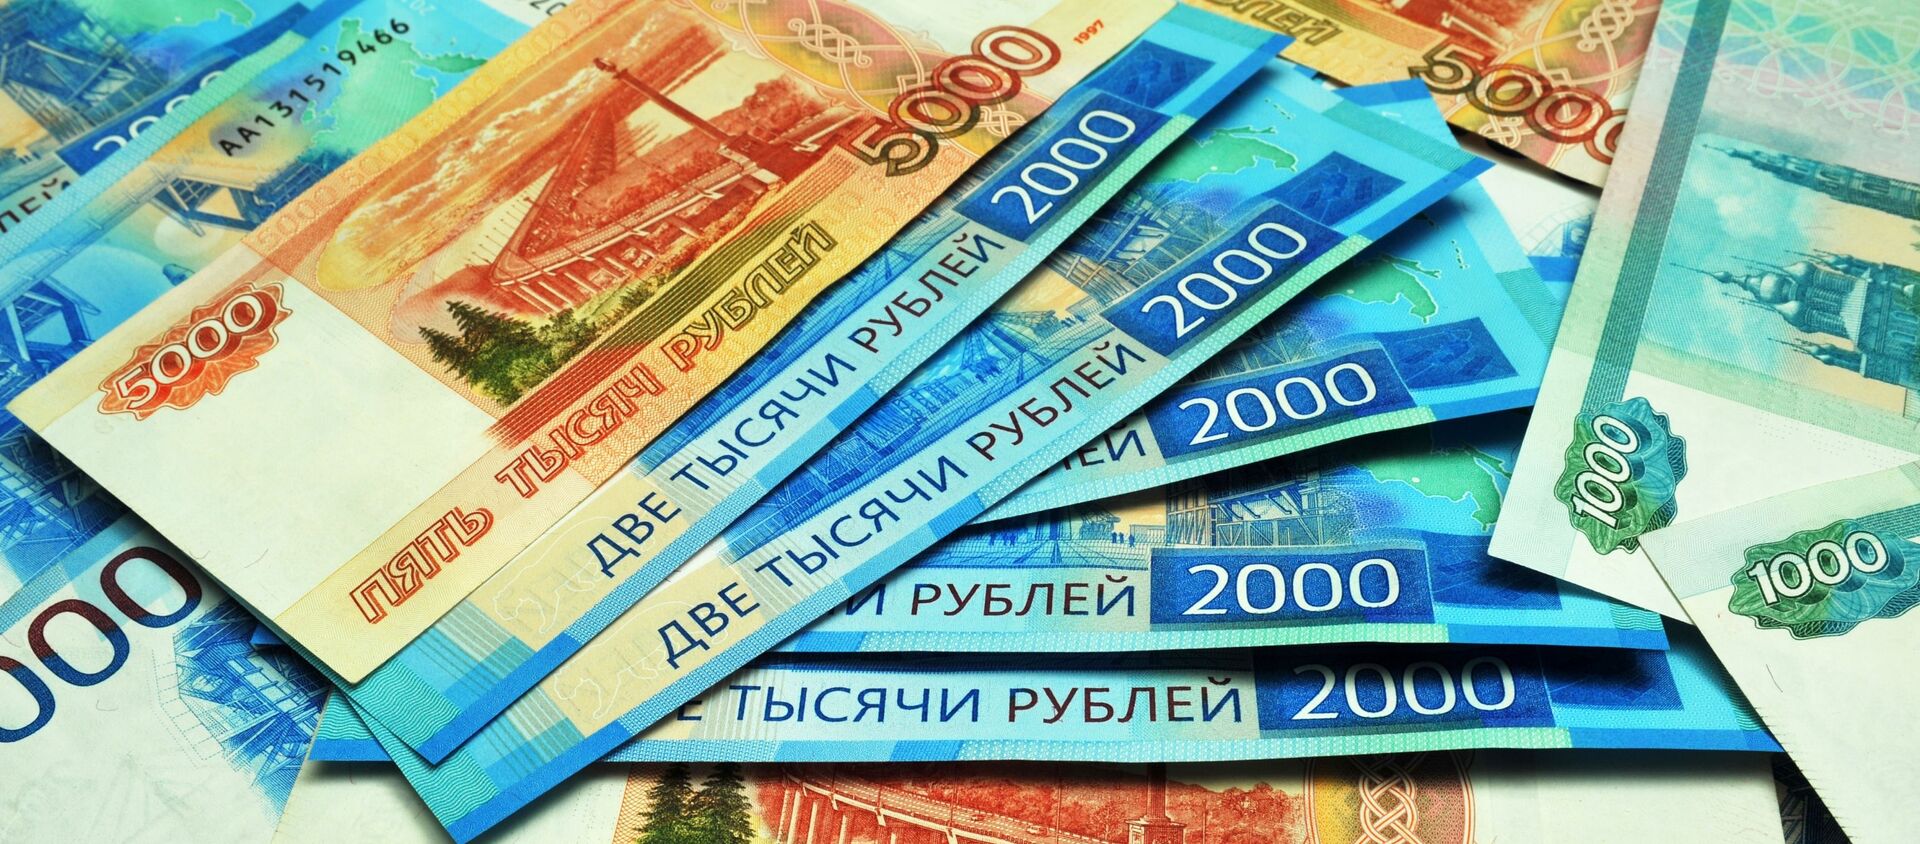 Банкноты номиналом 1000, 2000 и 5000 рублей. - Sputnik Абхазия, 1920, 23.03.2021